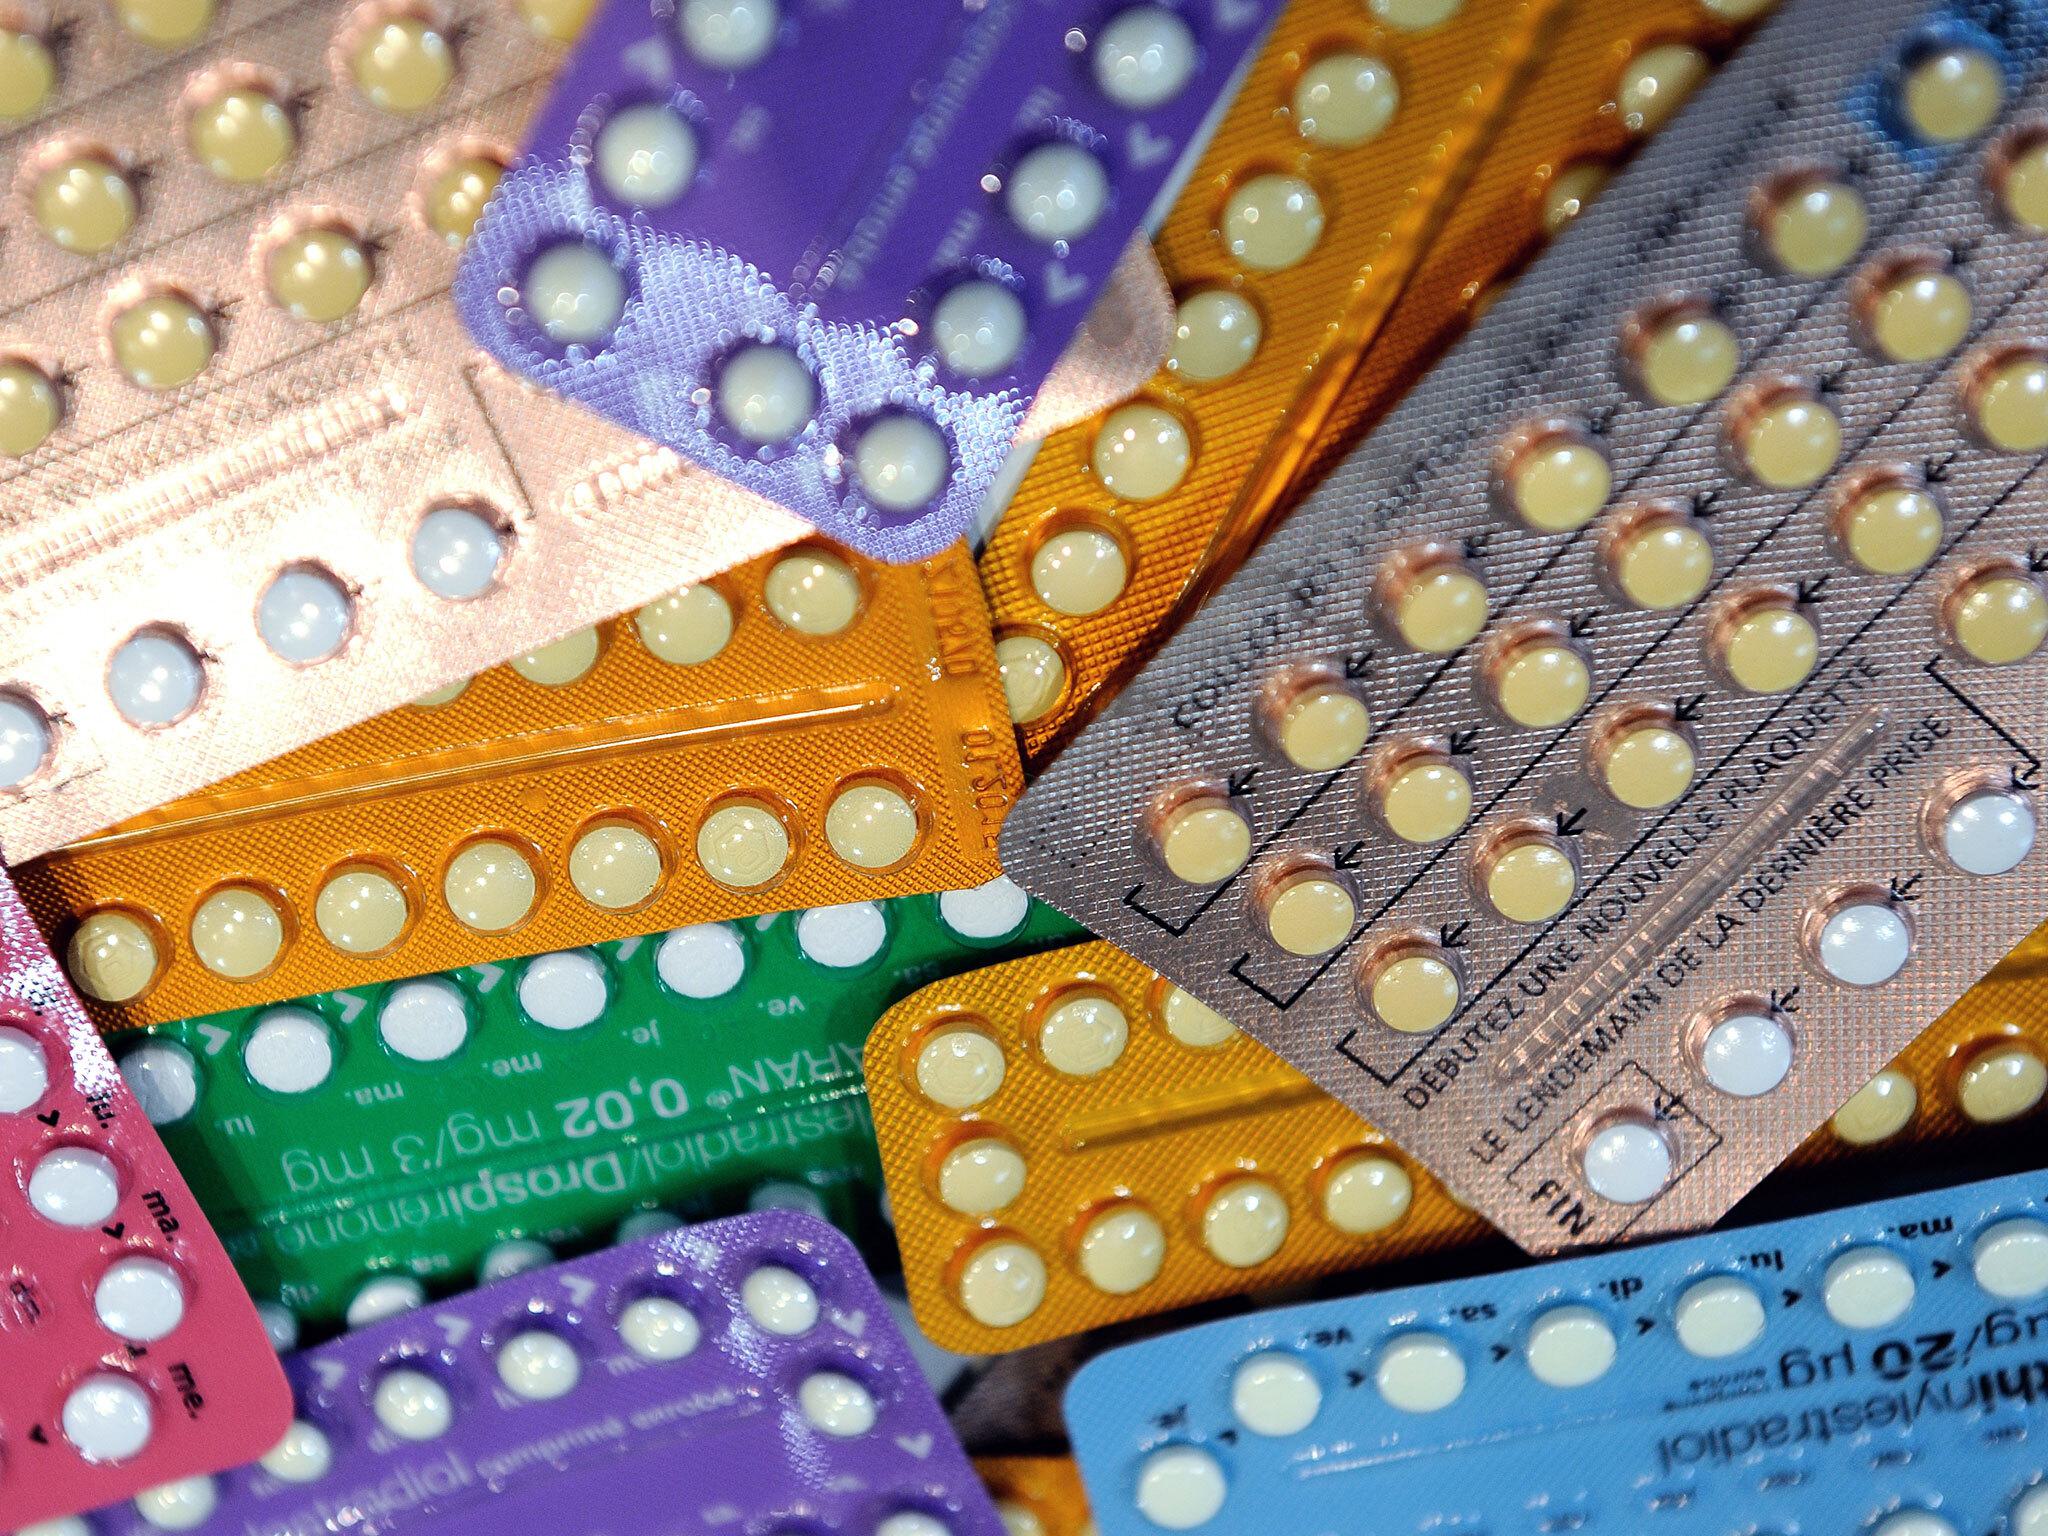 Engels onderzoek: anticonceptie voorkomt abortus niet